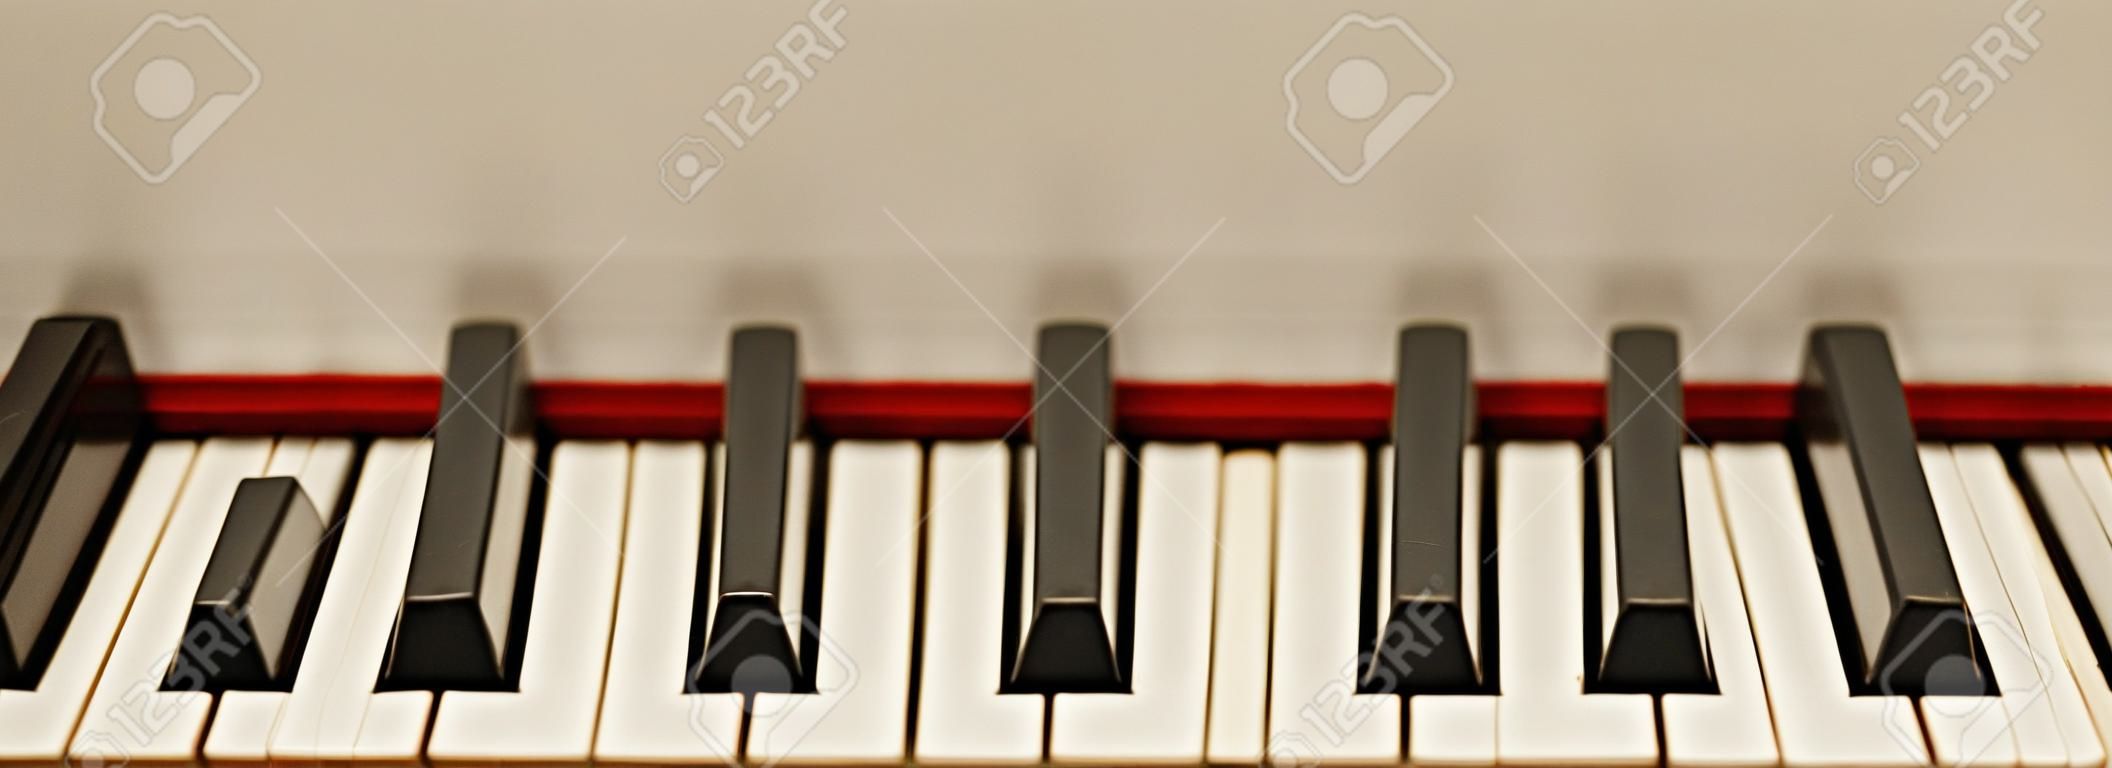 Das melodischste Musikinstrument. Nahaufnahme von schwarzen und weißen Klaviertasten. Musikkonzept